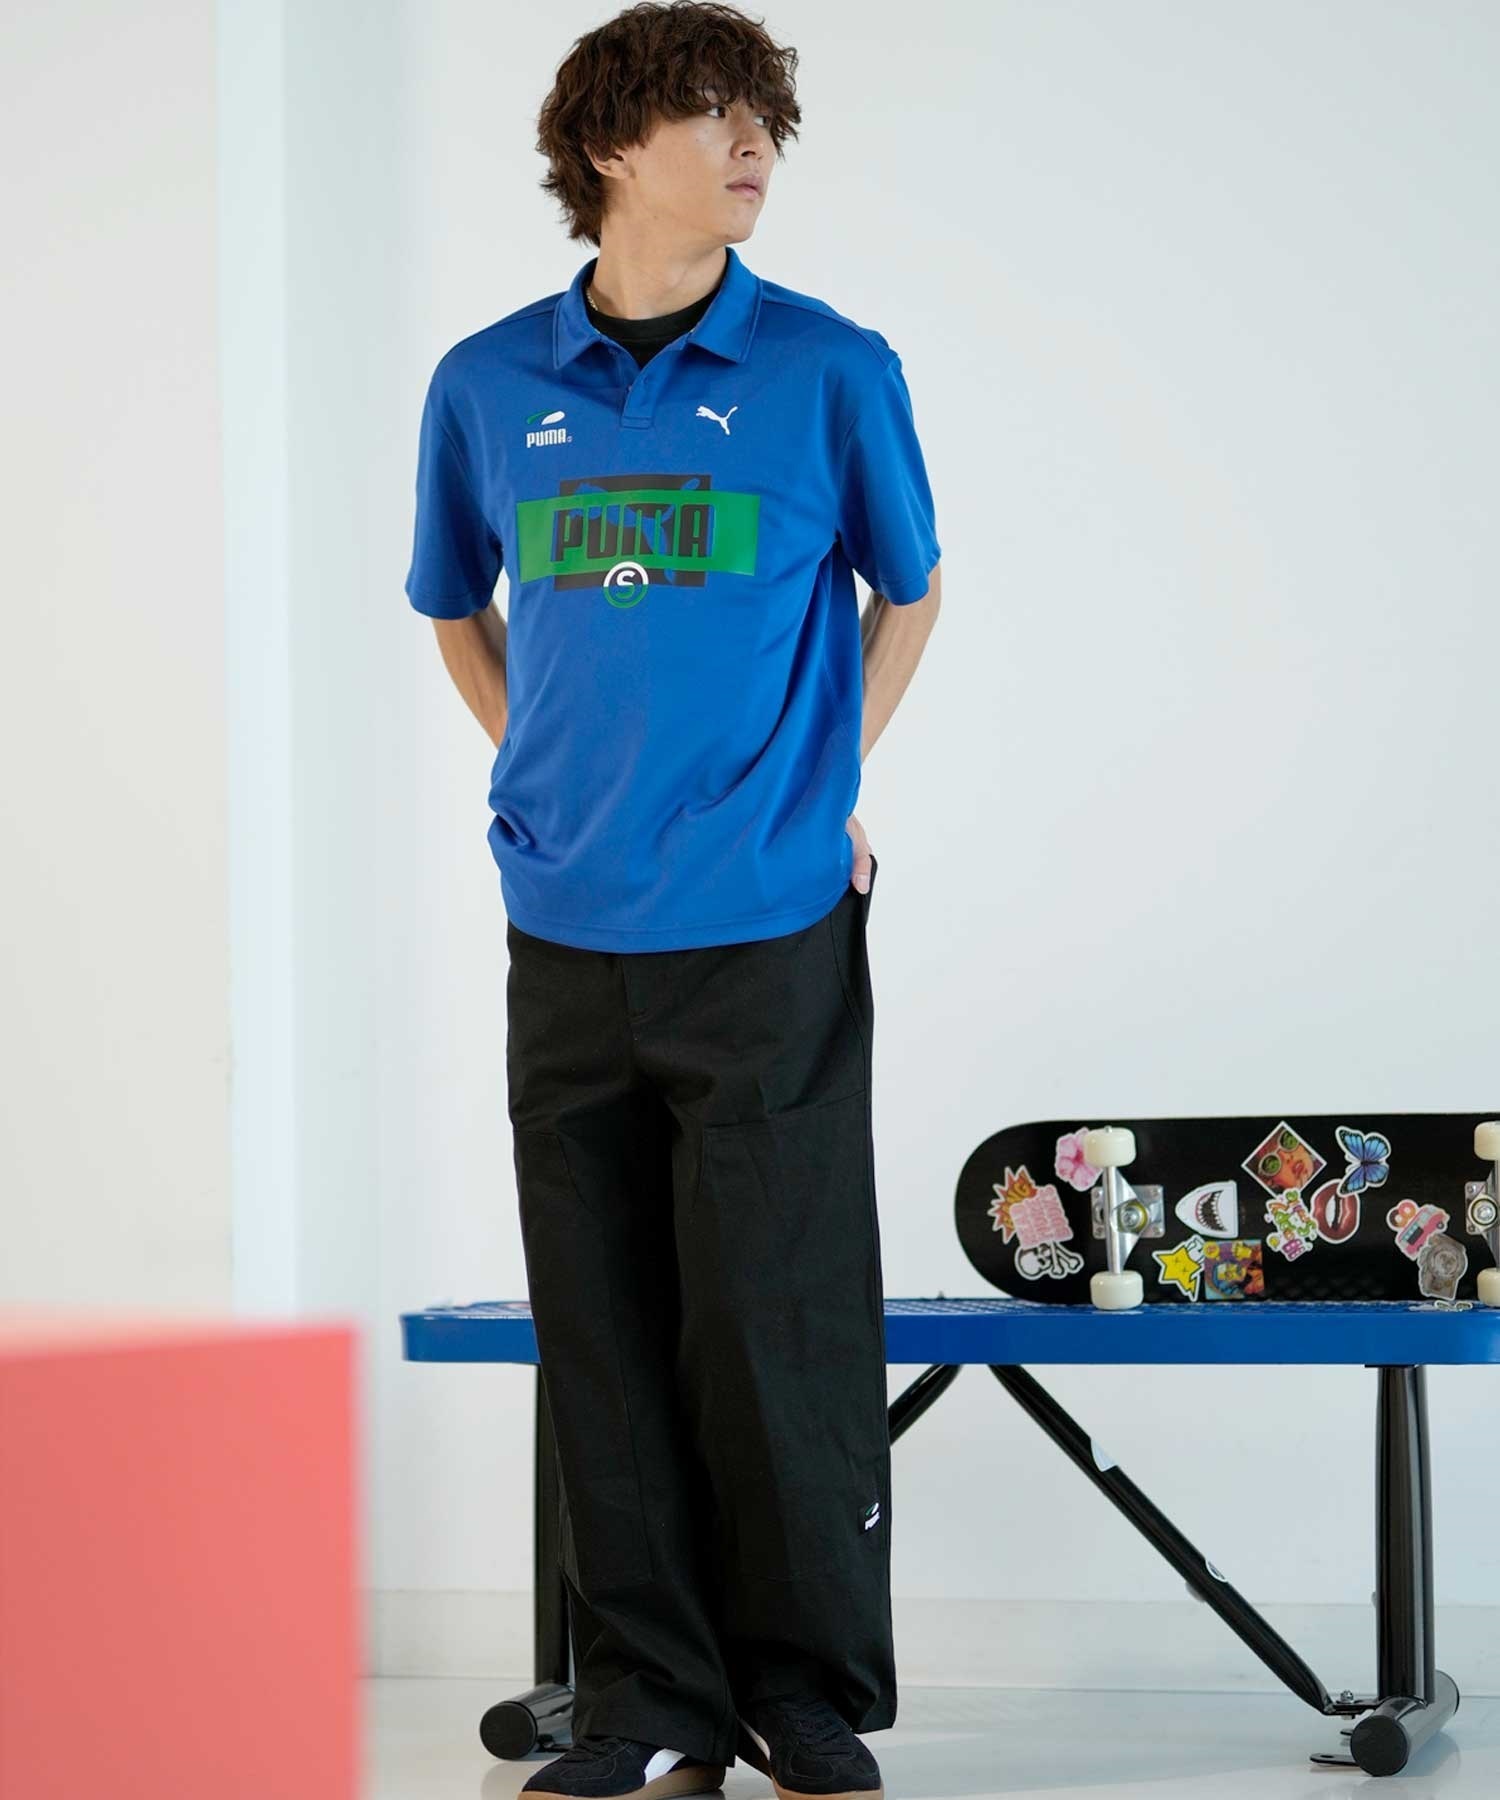 【マトメガイ対象】PUMA プーマ スケートボーディング スケートボード メンズ 半袖 ロシャツ 625694(17-M)